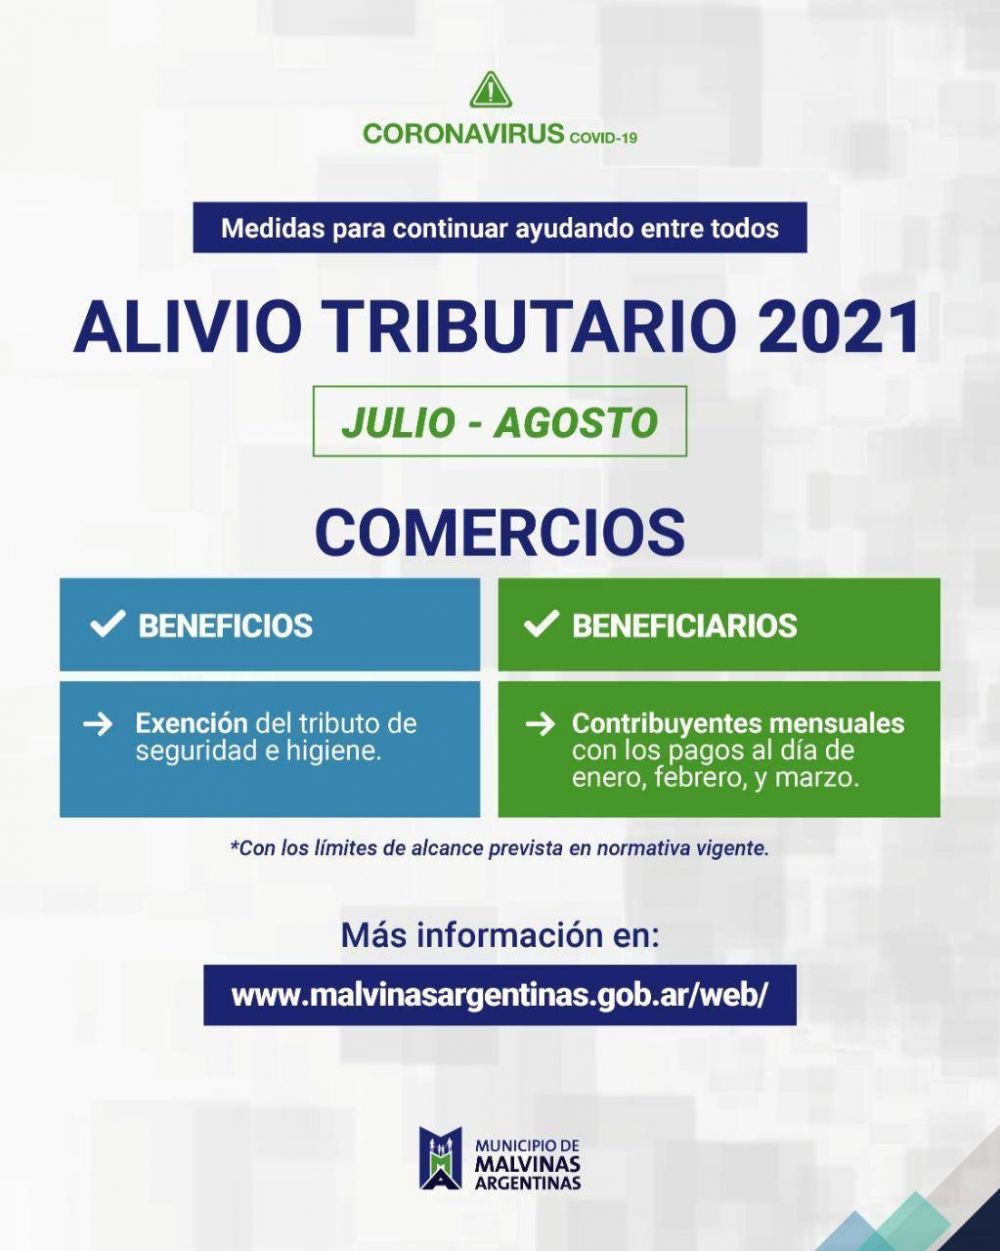 El Municipio de Malvinas Argentinas dispone nuevas medidas de alivio fiscal para sectores afectados por la pandemia de COVID-19